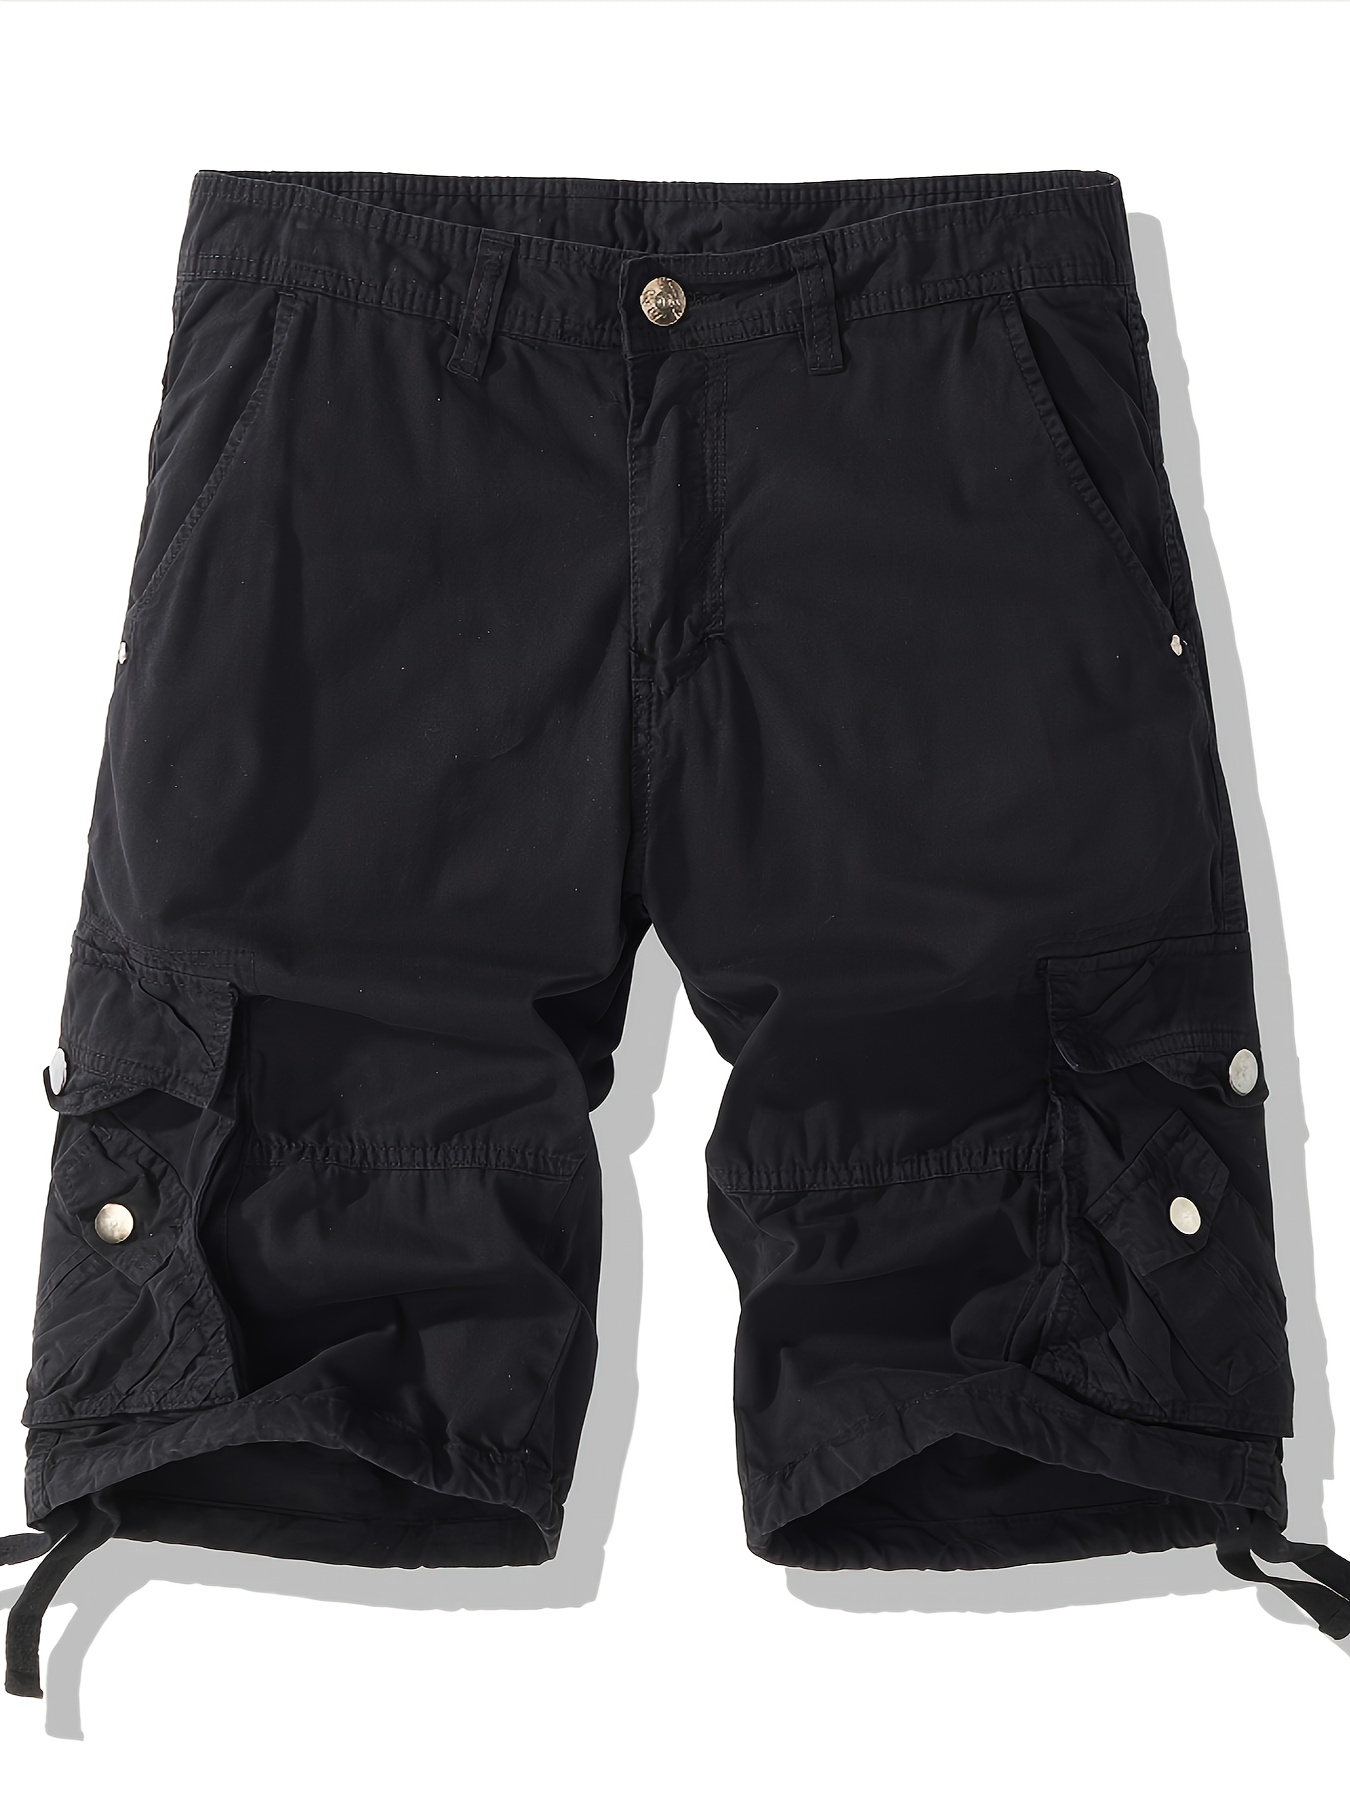 Conjuntos de camiseta y pantalones cortos de Crossfit para hombre, trajes  de moda informales de algodón, conjunto de 2 piezas, conjuntos cortos